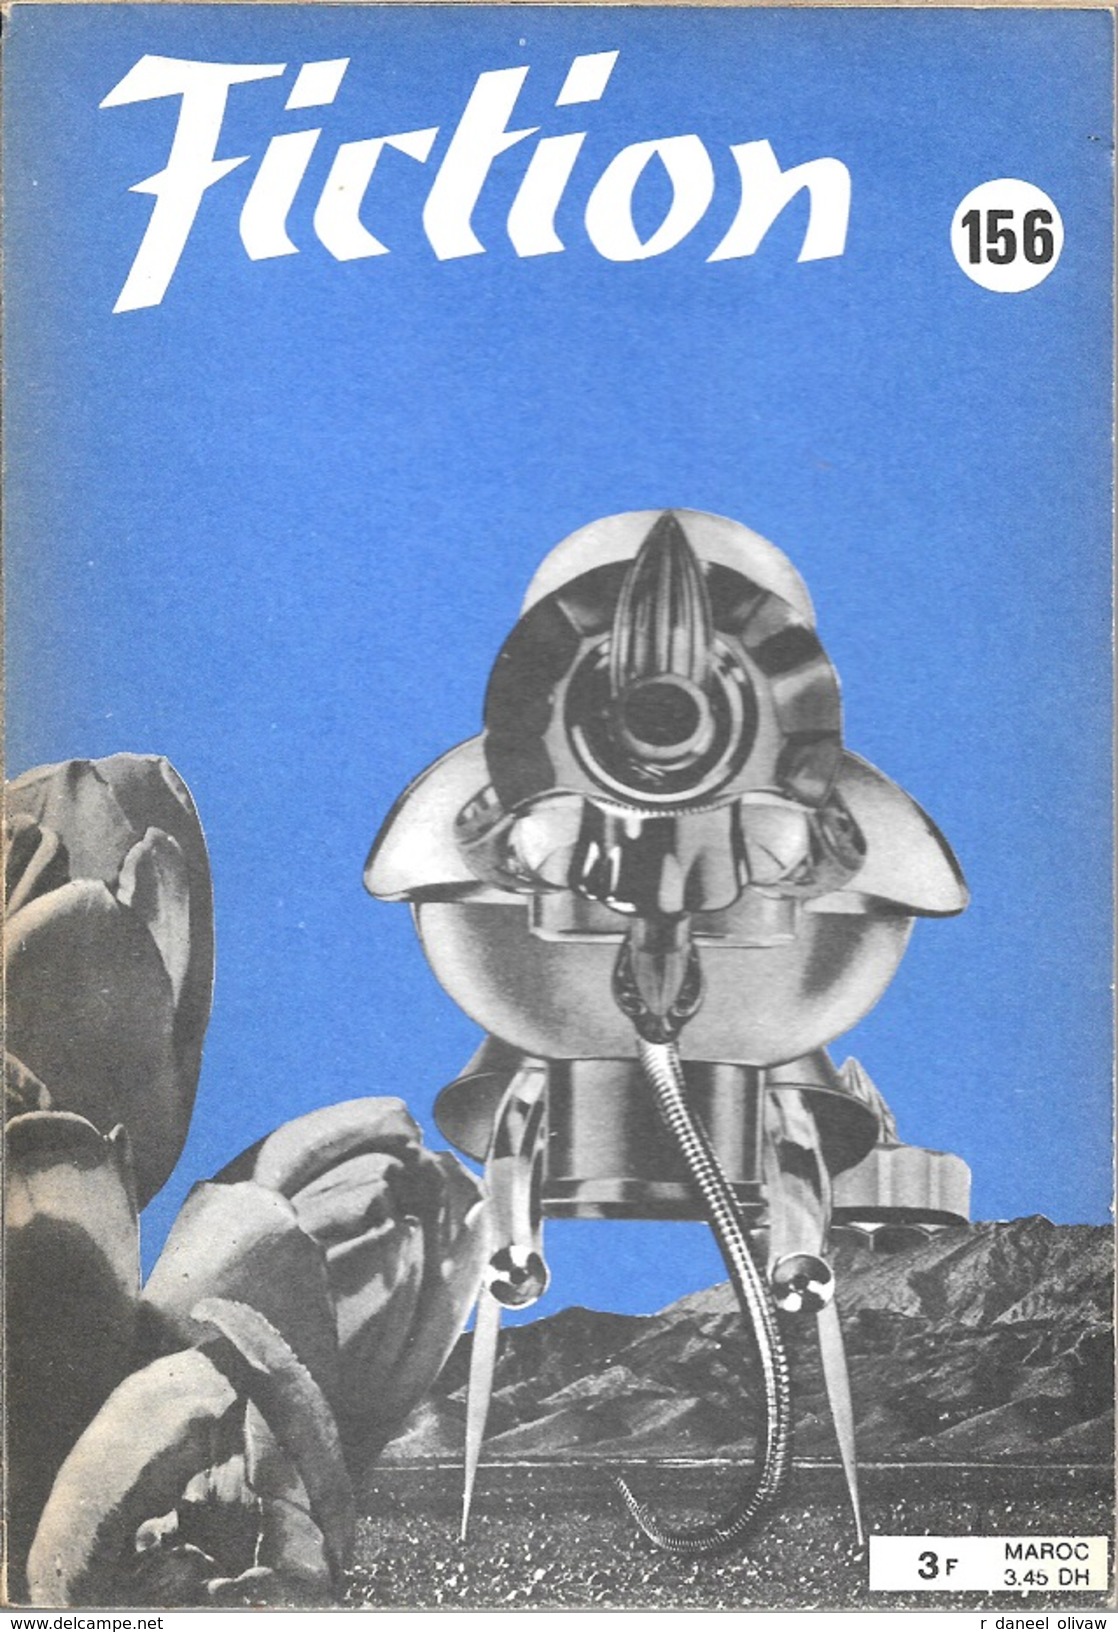 Fiction N° 156, Novembre 1966 (TBE) - Fictie